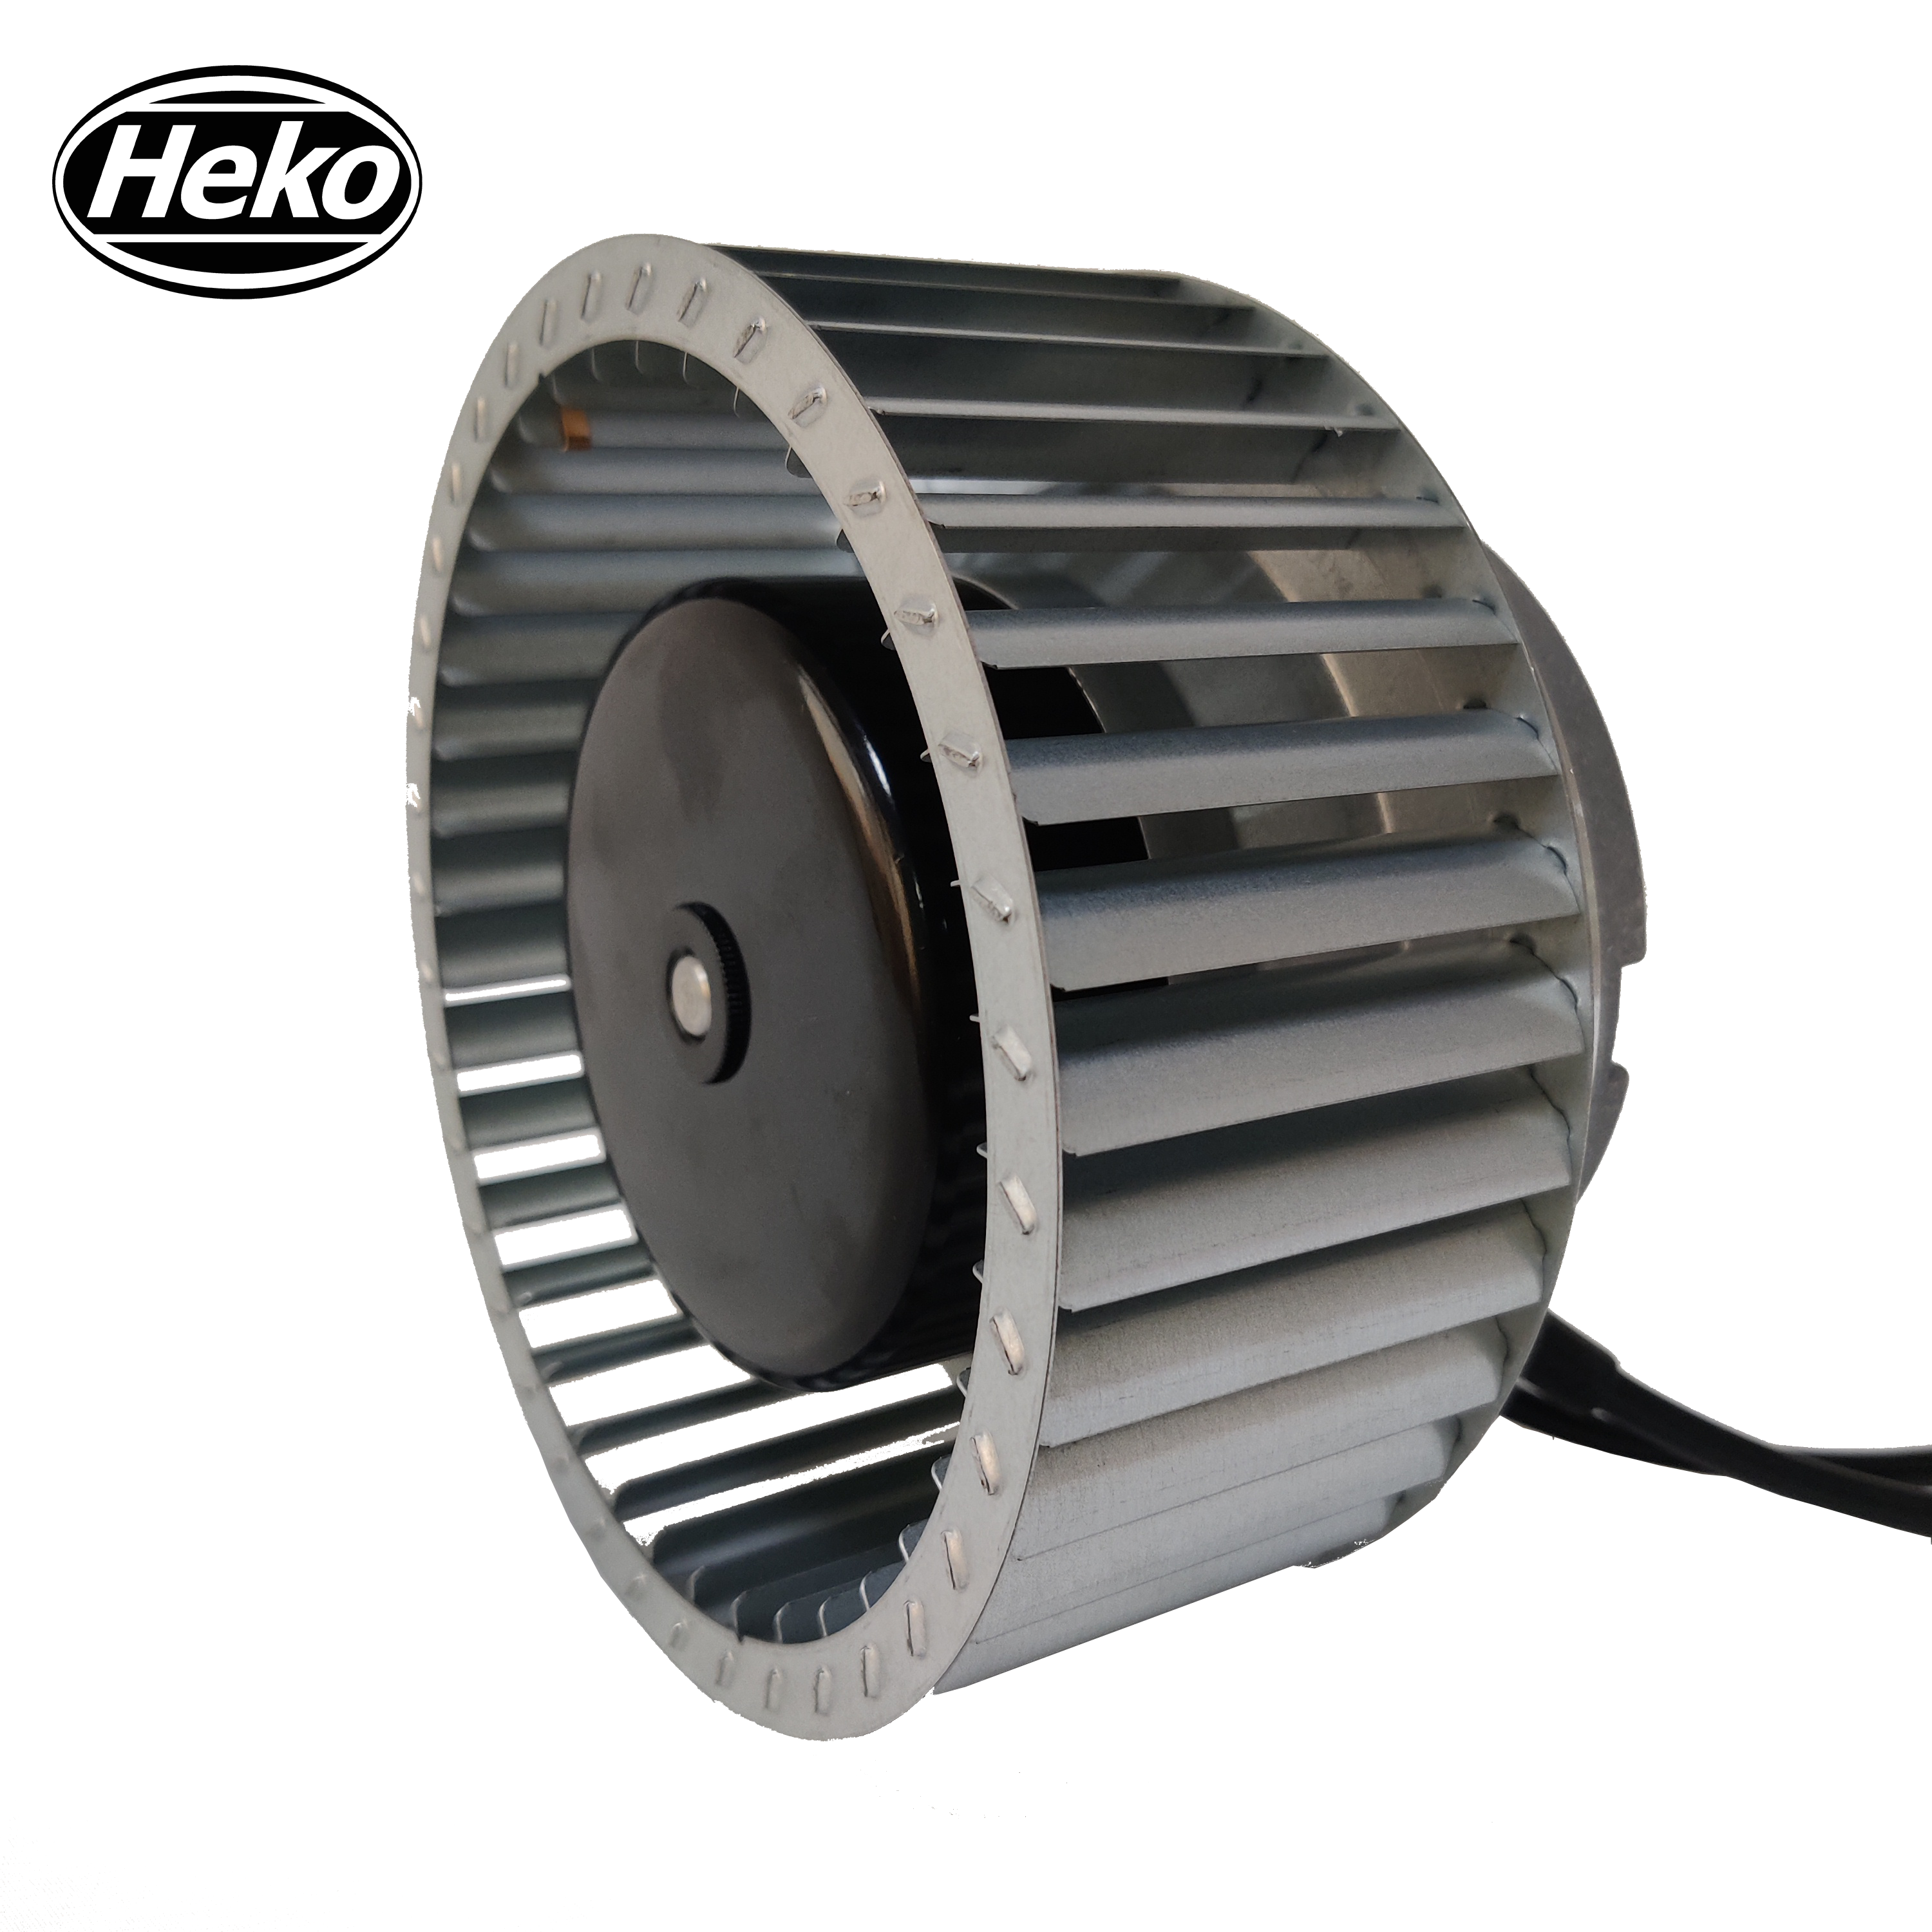 HEKO EC160mm 230V Industrial Forward Curved Centrifugal Fan